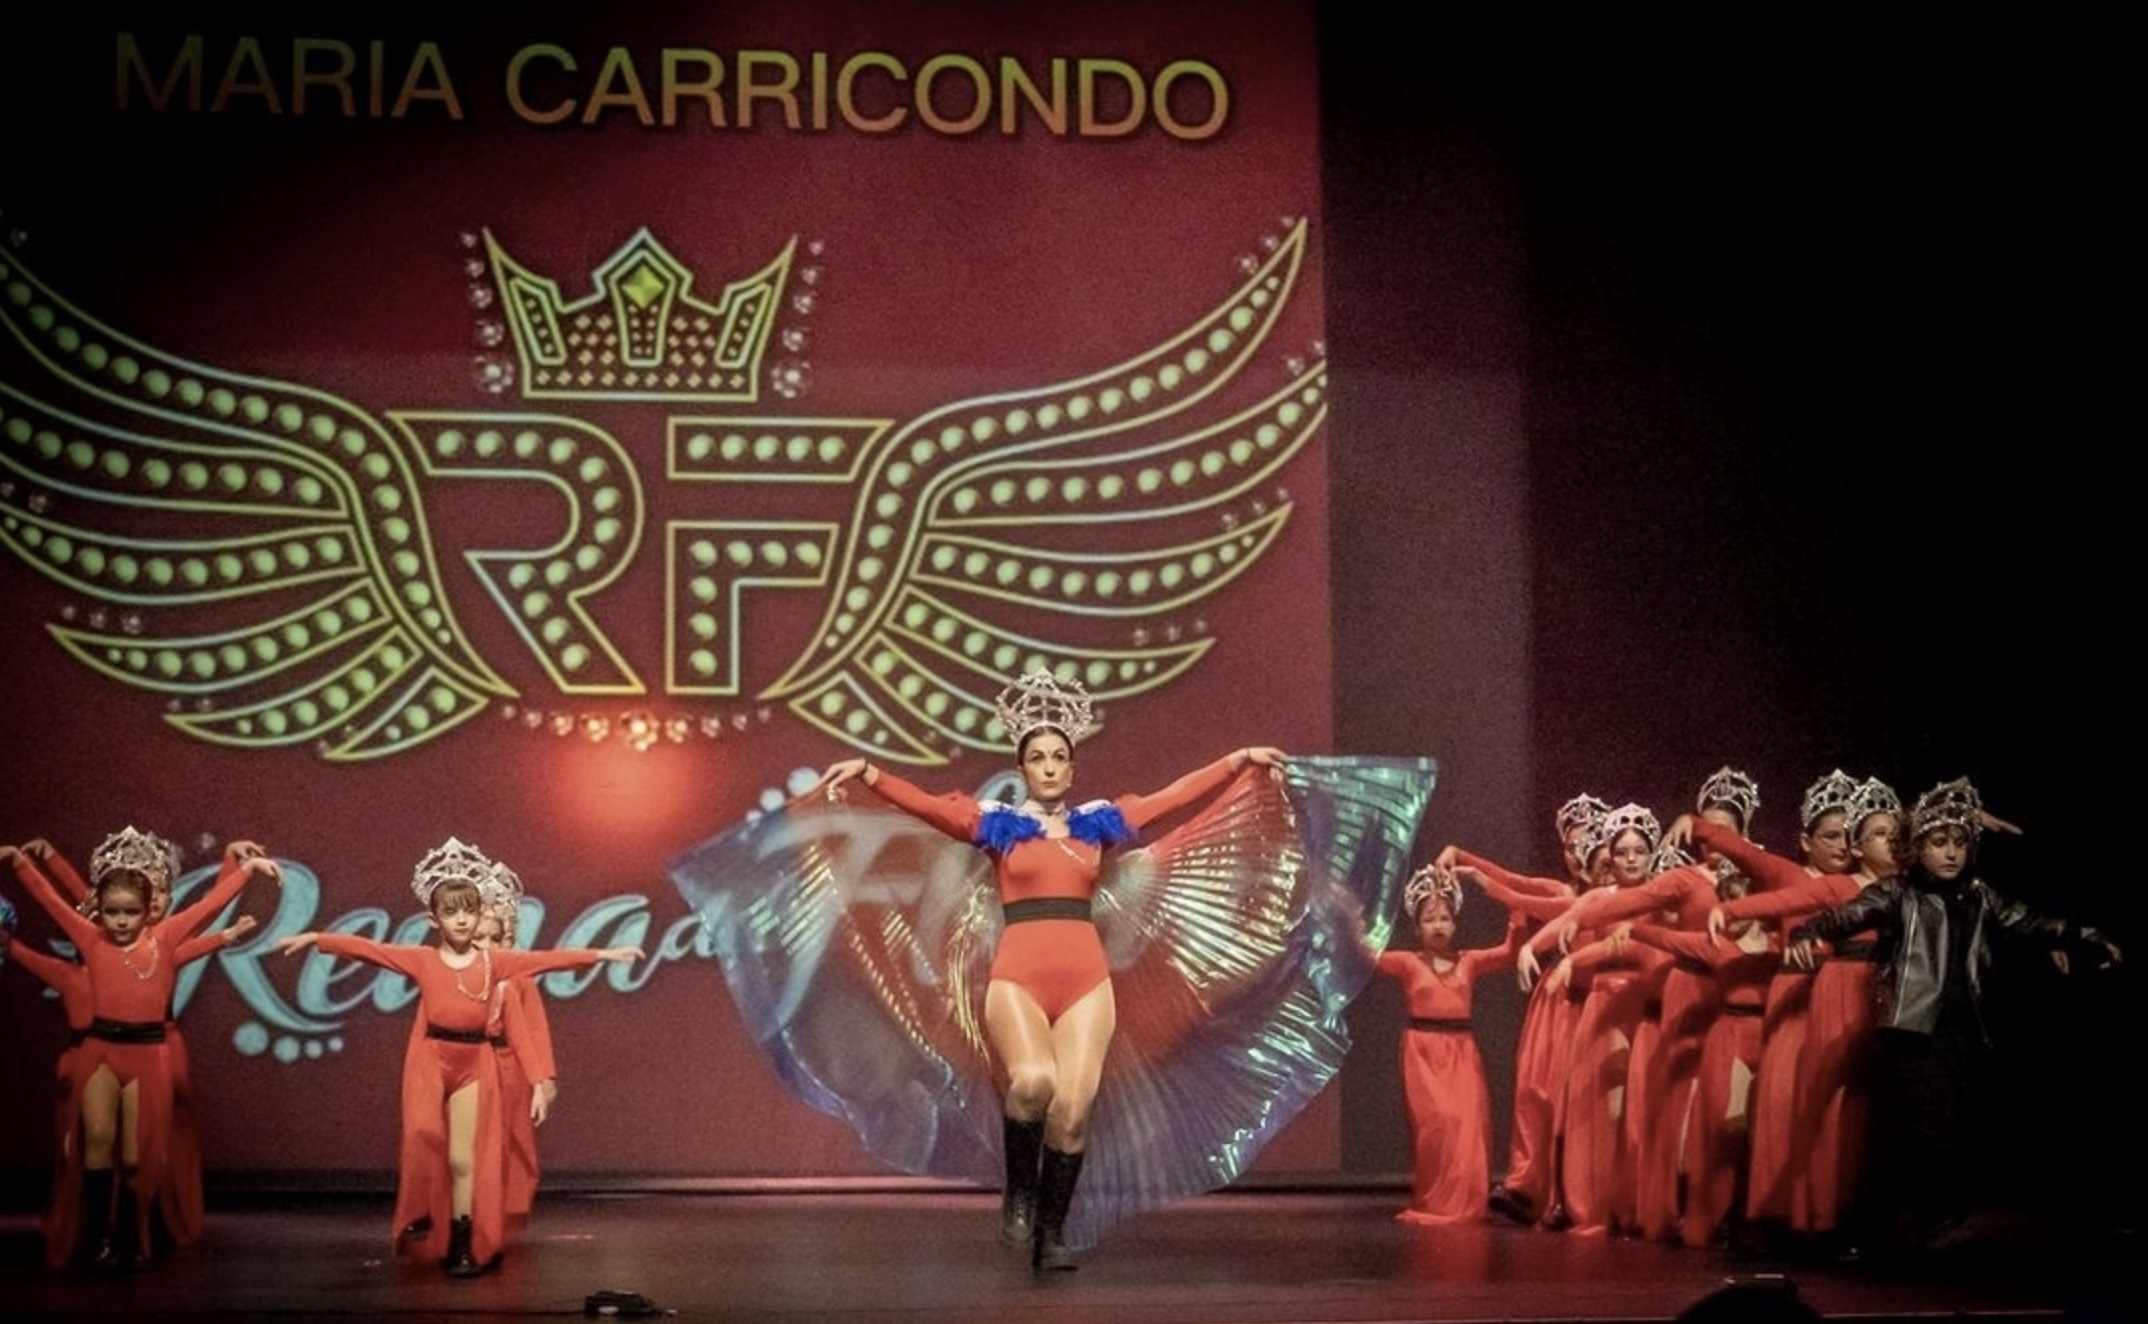 Maria Carricondo Baile funky